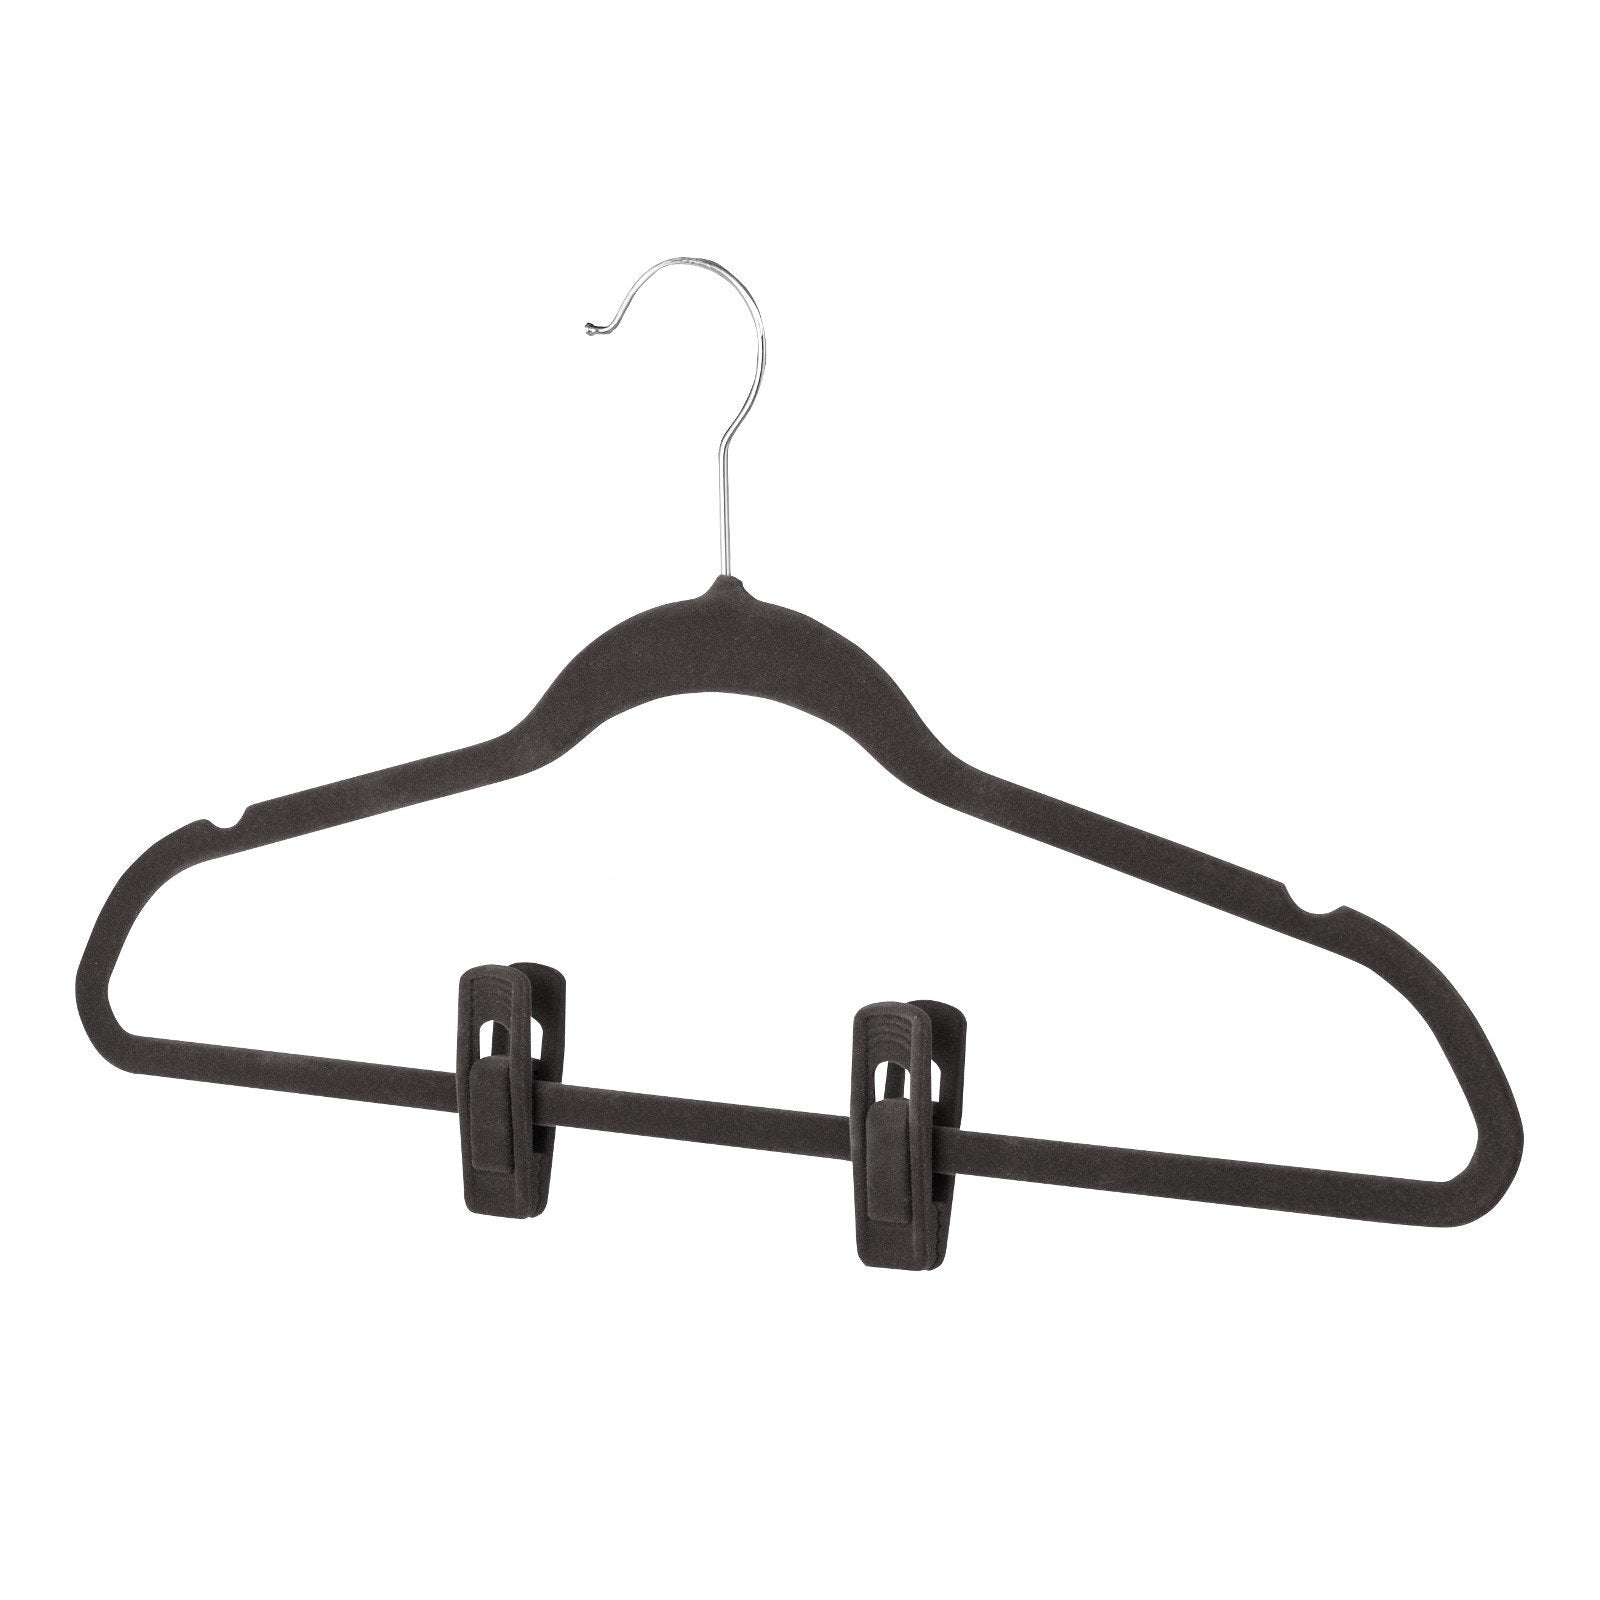 Hanger Clips - Set of 12 - Black - 75% OFF